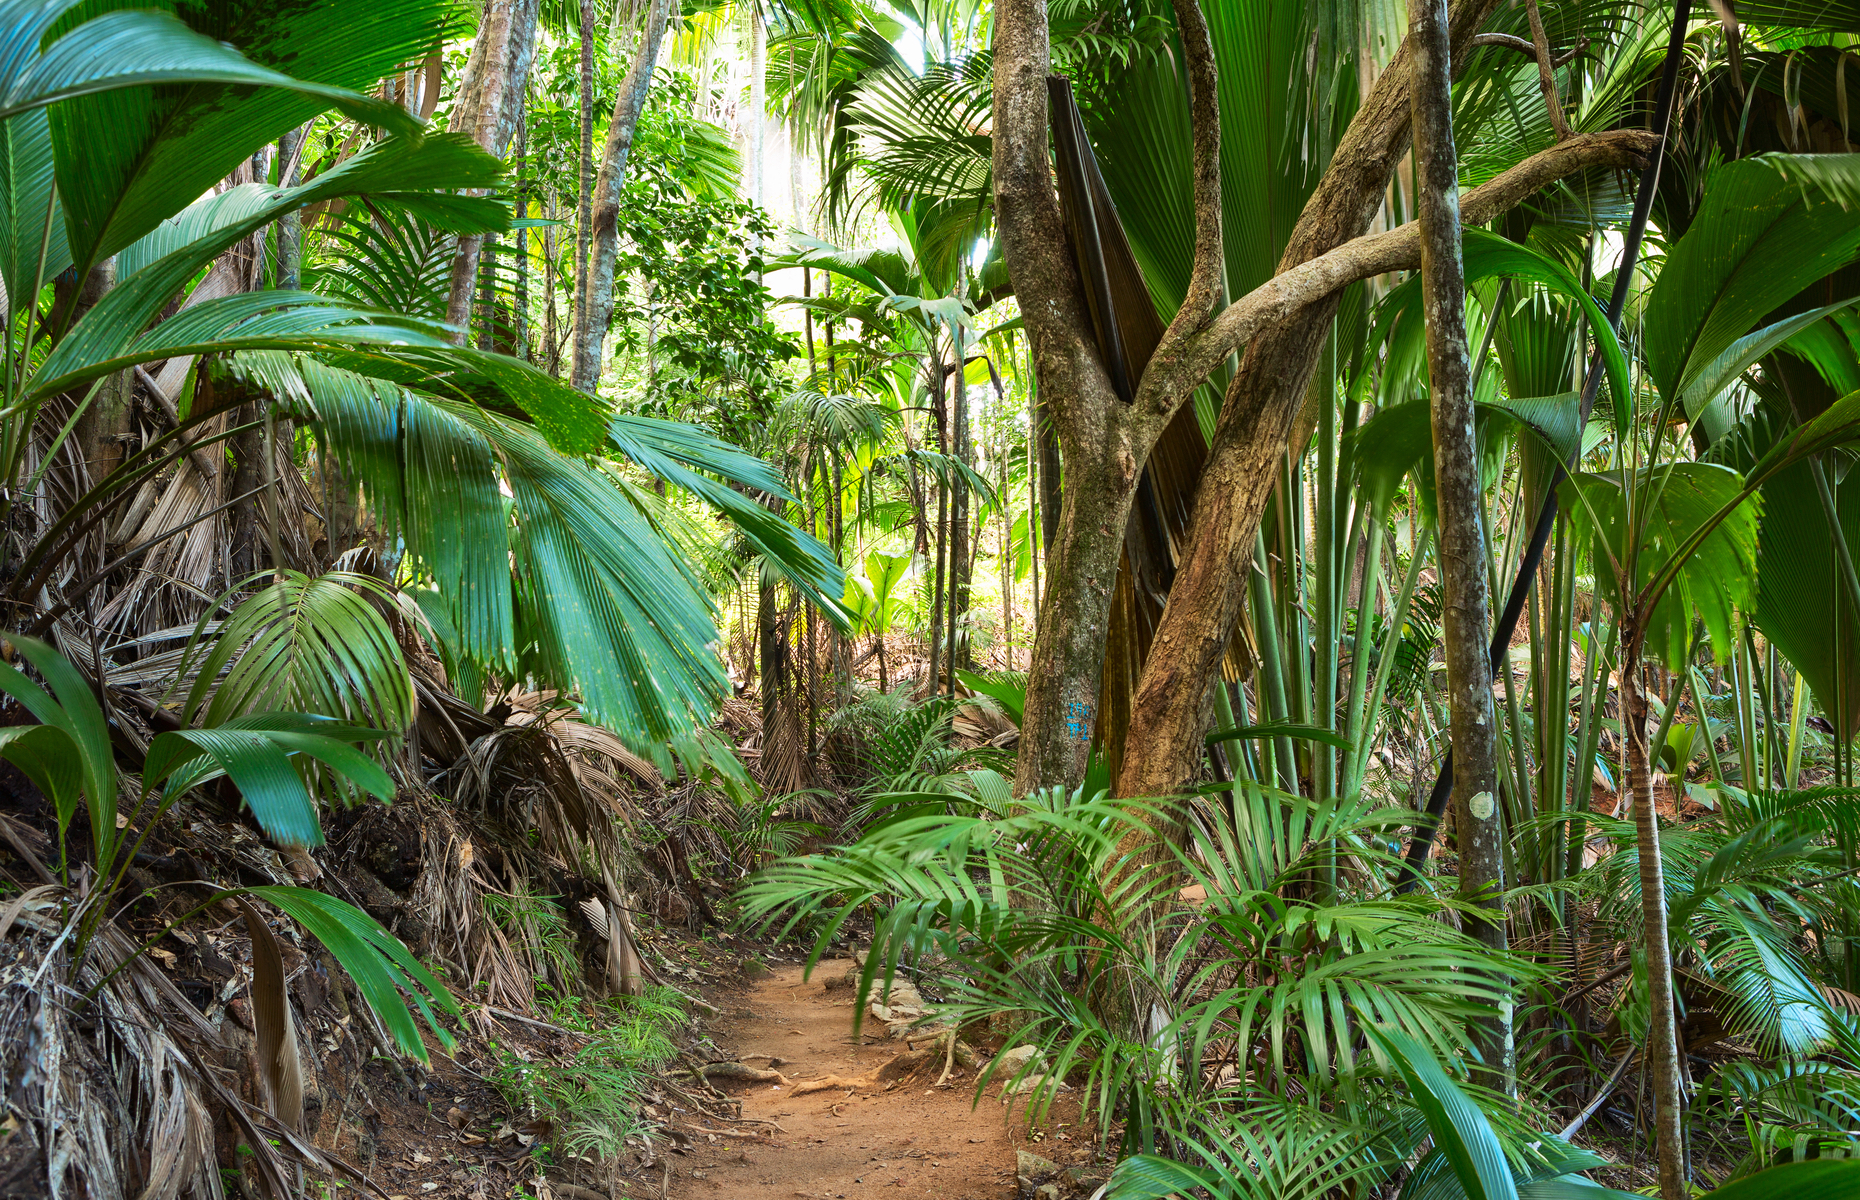 Coco de Mer forest reserve in Seychelles (Image: Nella/Shutterstock)